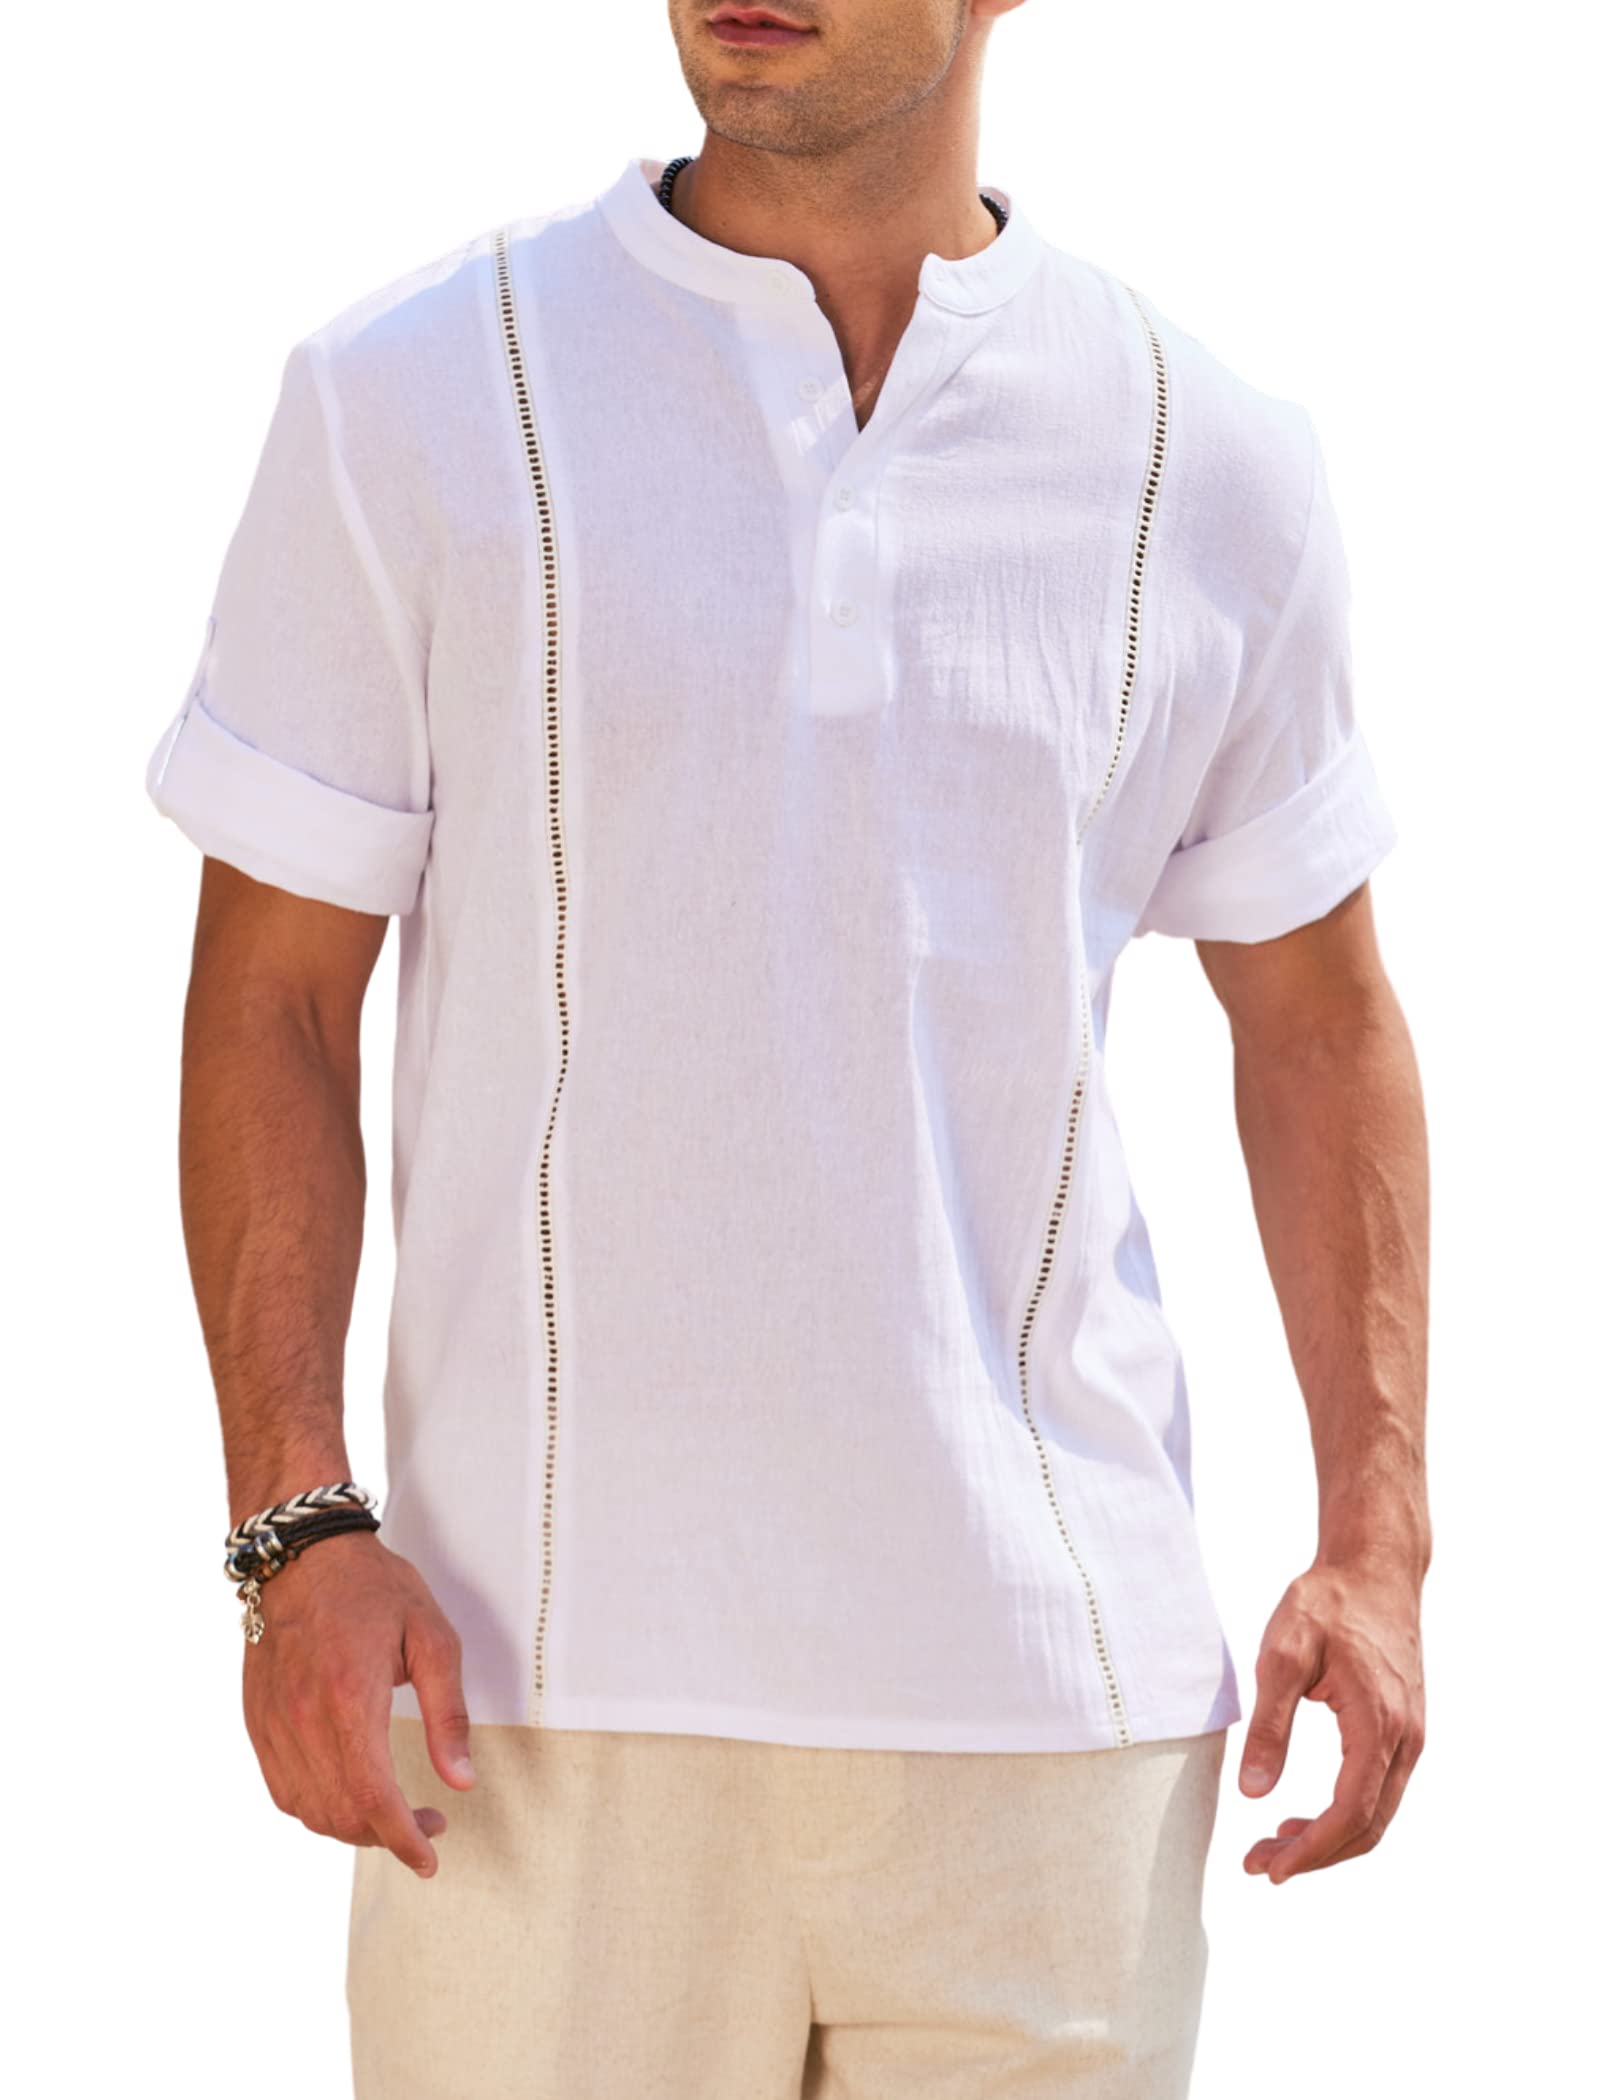 Men's Henley Shirt Long Sleeve Casual Lightweight Summer Beach